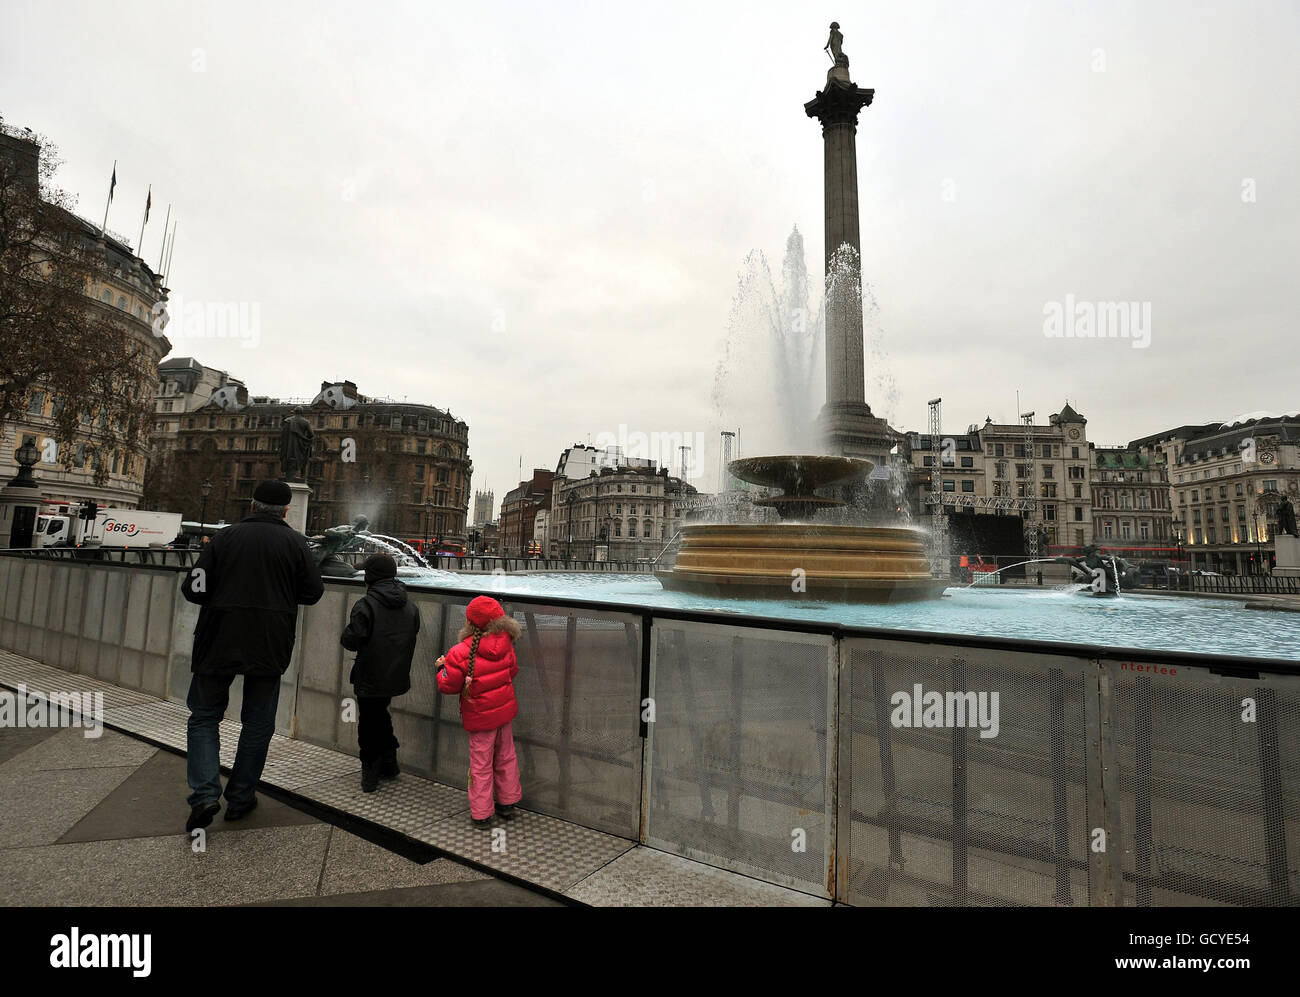 Einer der Wasserbrunnen am Trafalgar Square ist von Stahlzäunen umgeben, um ihn vor der breiten Öffentlichkeit zu schützen, die heute Abend das neue Jahr im Londoner Wahrzeichen im Zentrum Londons sehen wird. Stockfoto